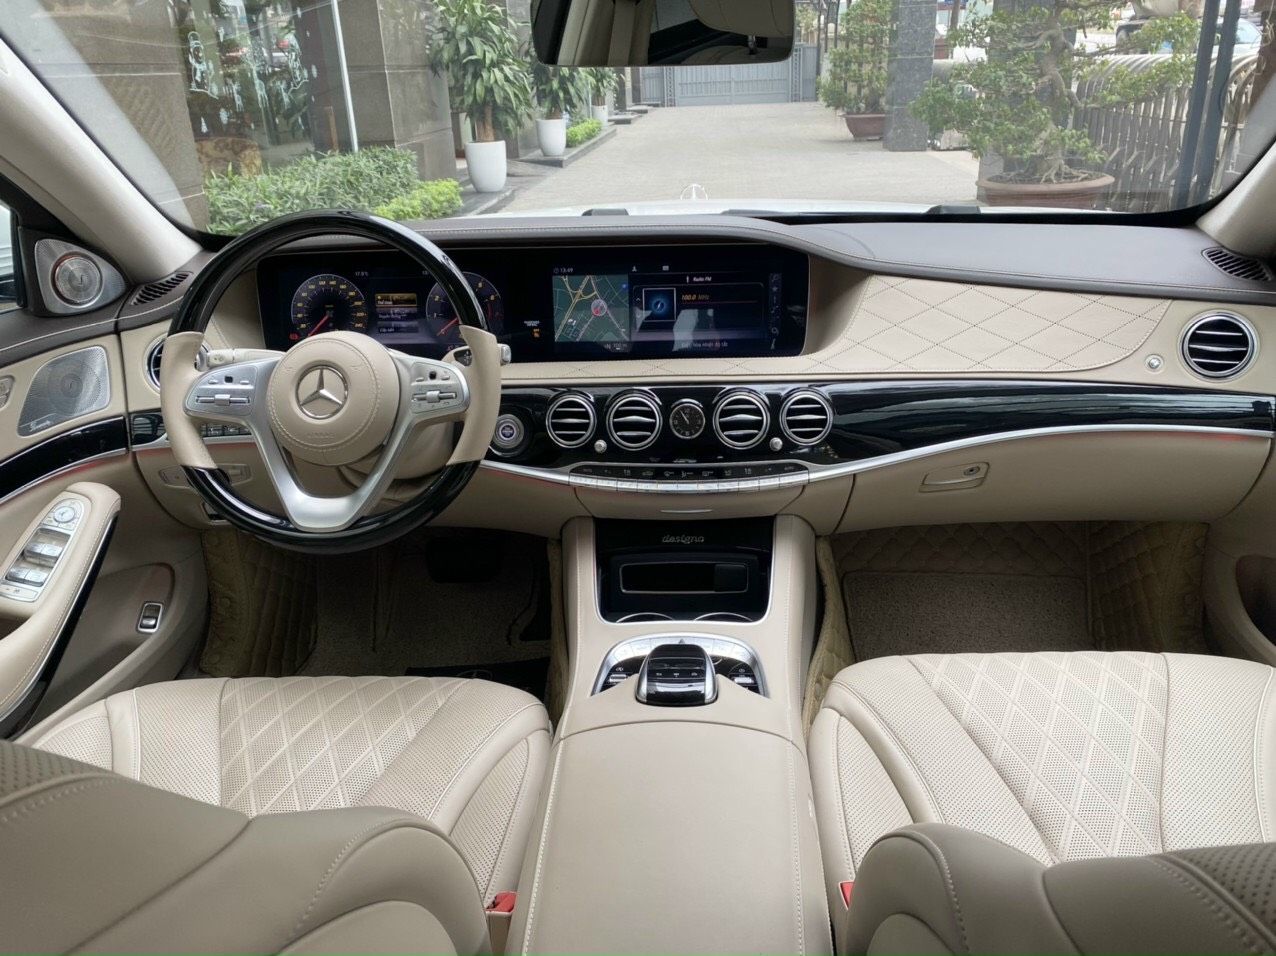 Mercedes-Benz 2020 - Cần bán xe Mercedes-Benz S450 Luxury model 2020 siêu siêu lướt, màu trắng, giá siêu tốt, bảo hành chính hãng tới T6/2022, không giới hạn km